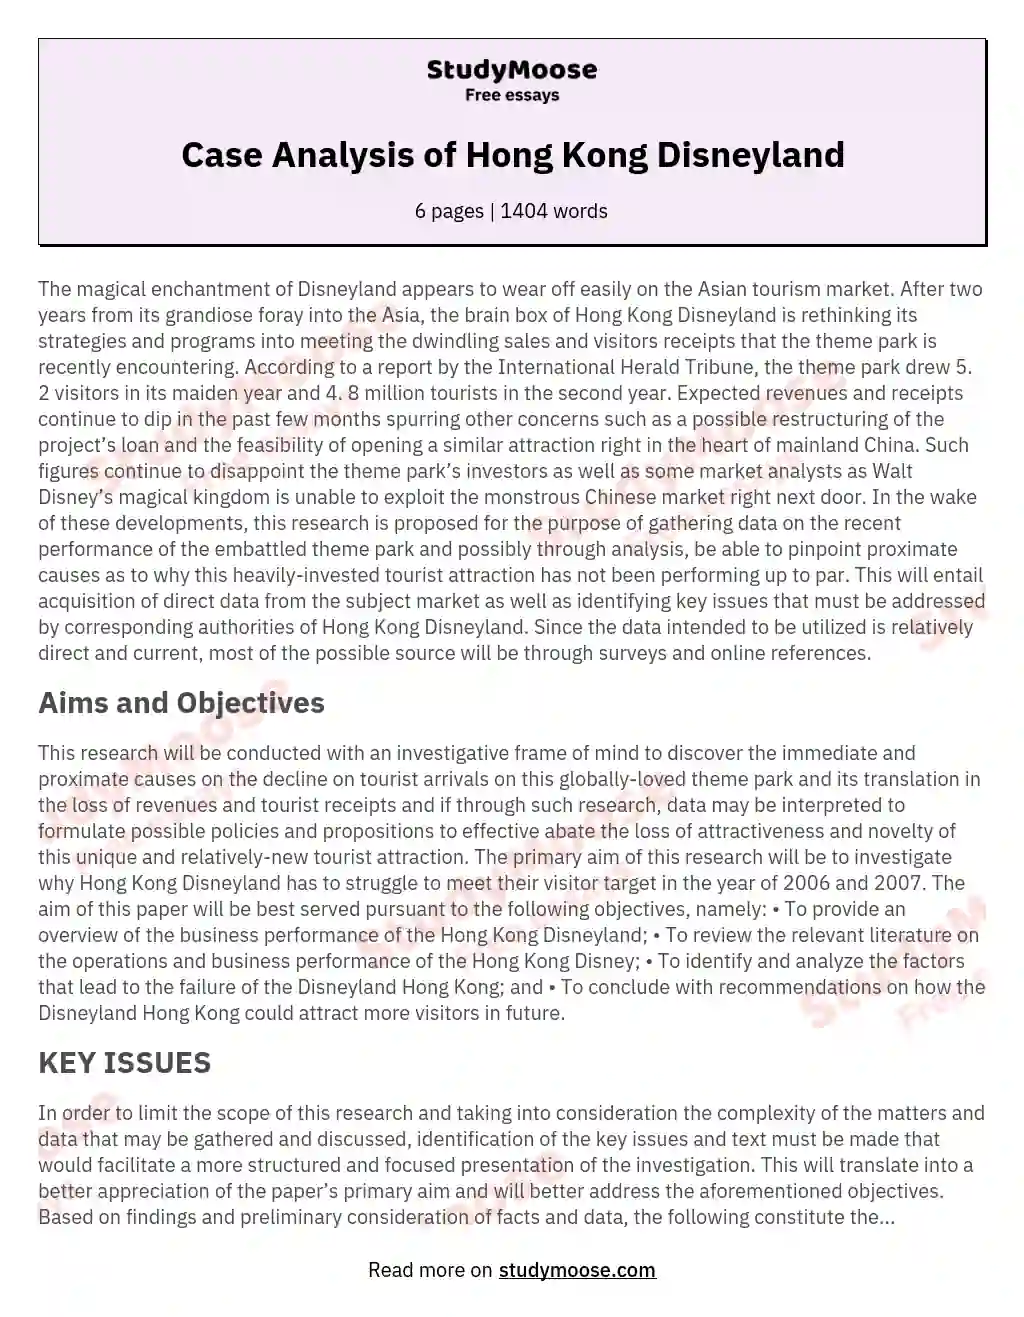 Case Analysis of Hong Kong Disneyland essay